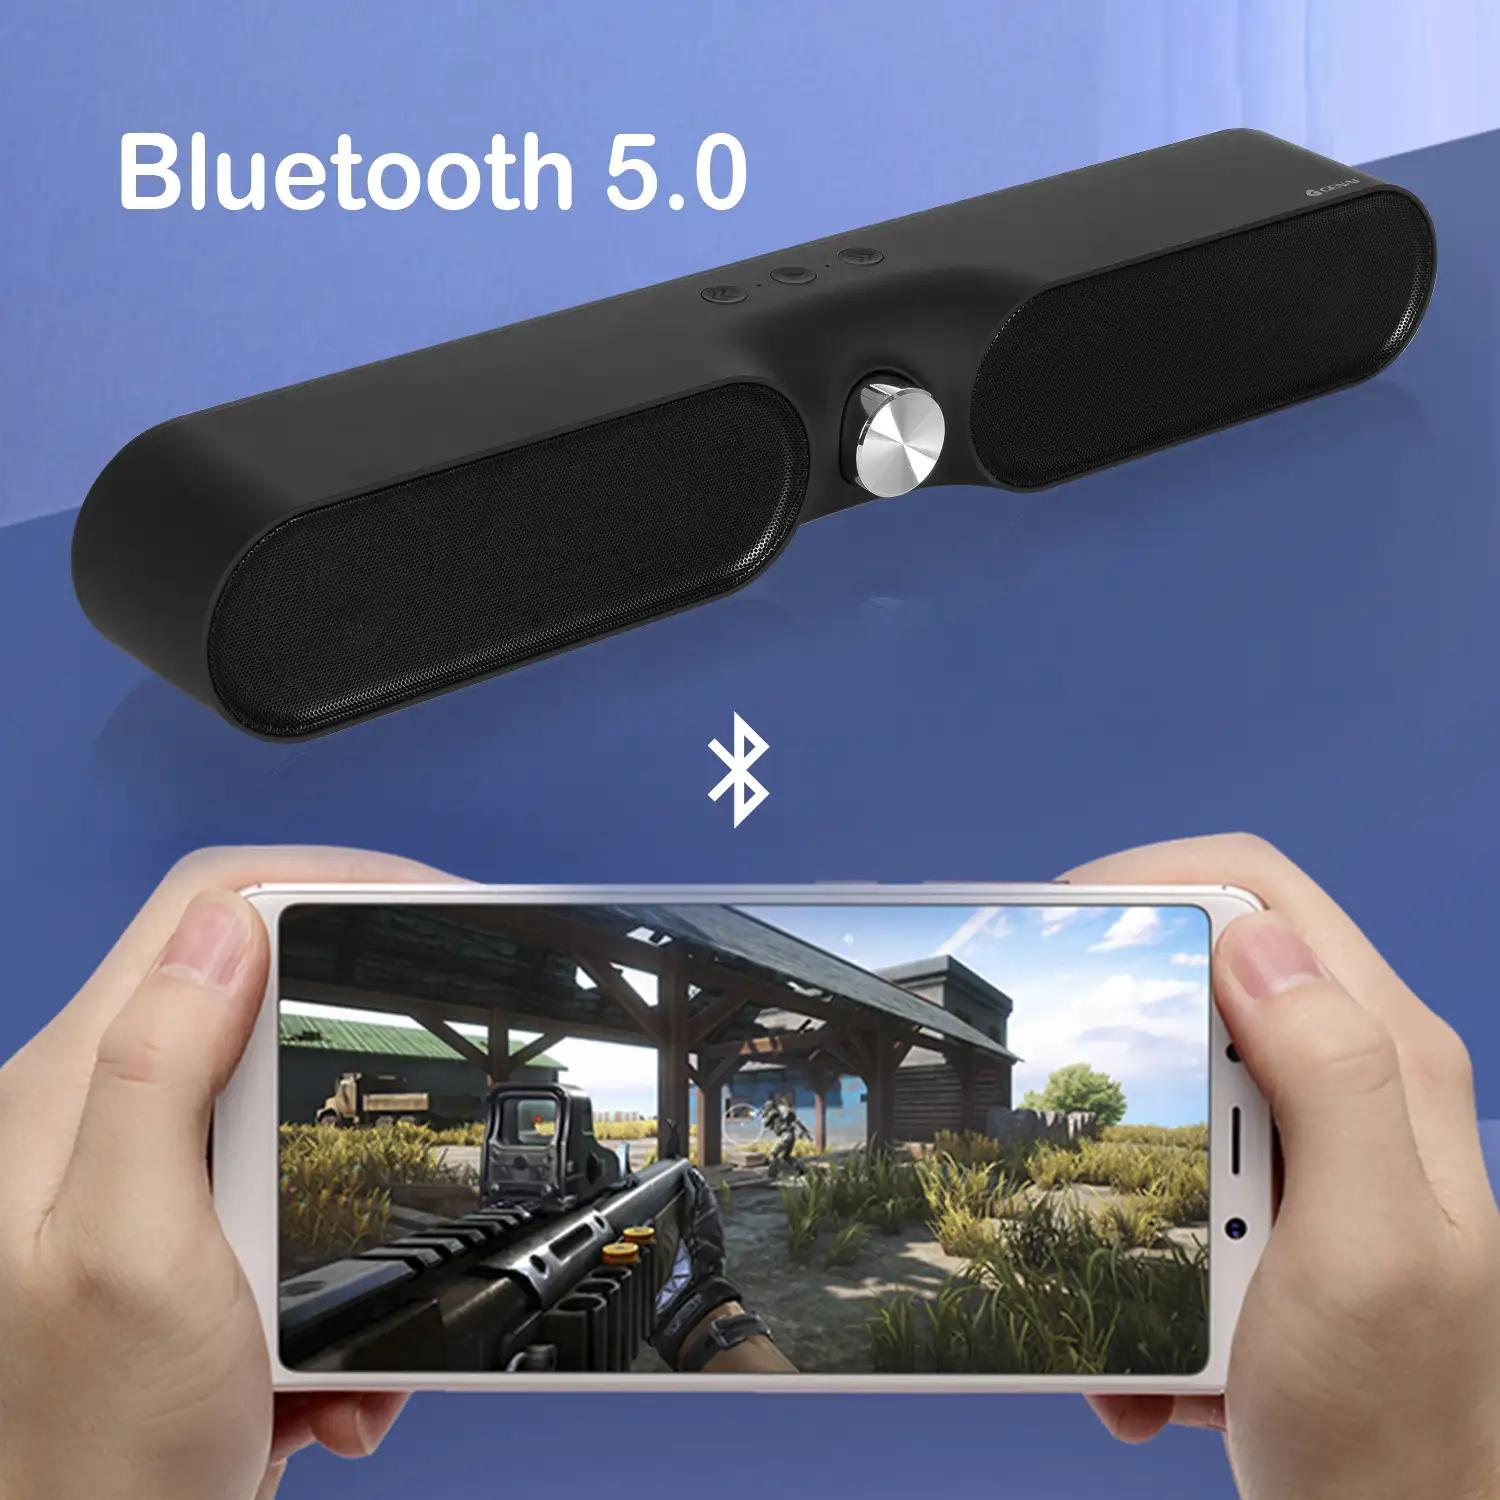 Pack: Video proyector LED A13 con Wifi y Android 6.0 incorporado. HD1080P + Barra de sonido YSW05, Bluetooth 5.0. Batería incorporada de 2400mAh.